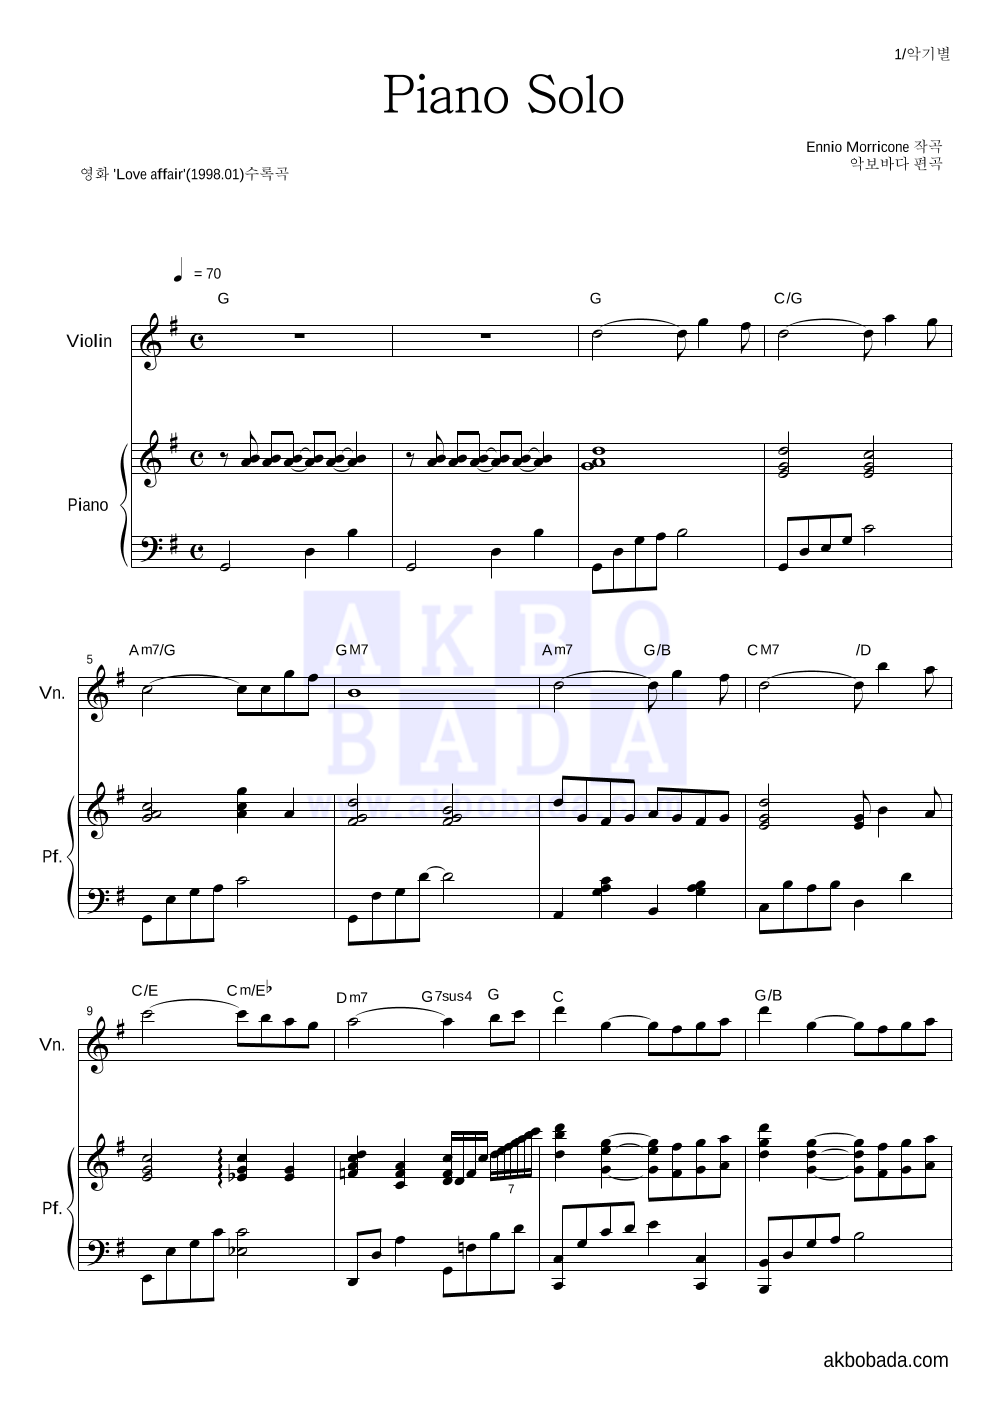 Ennio Morricone - Piano Solo 바이올린&피아노 악보 